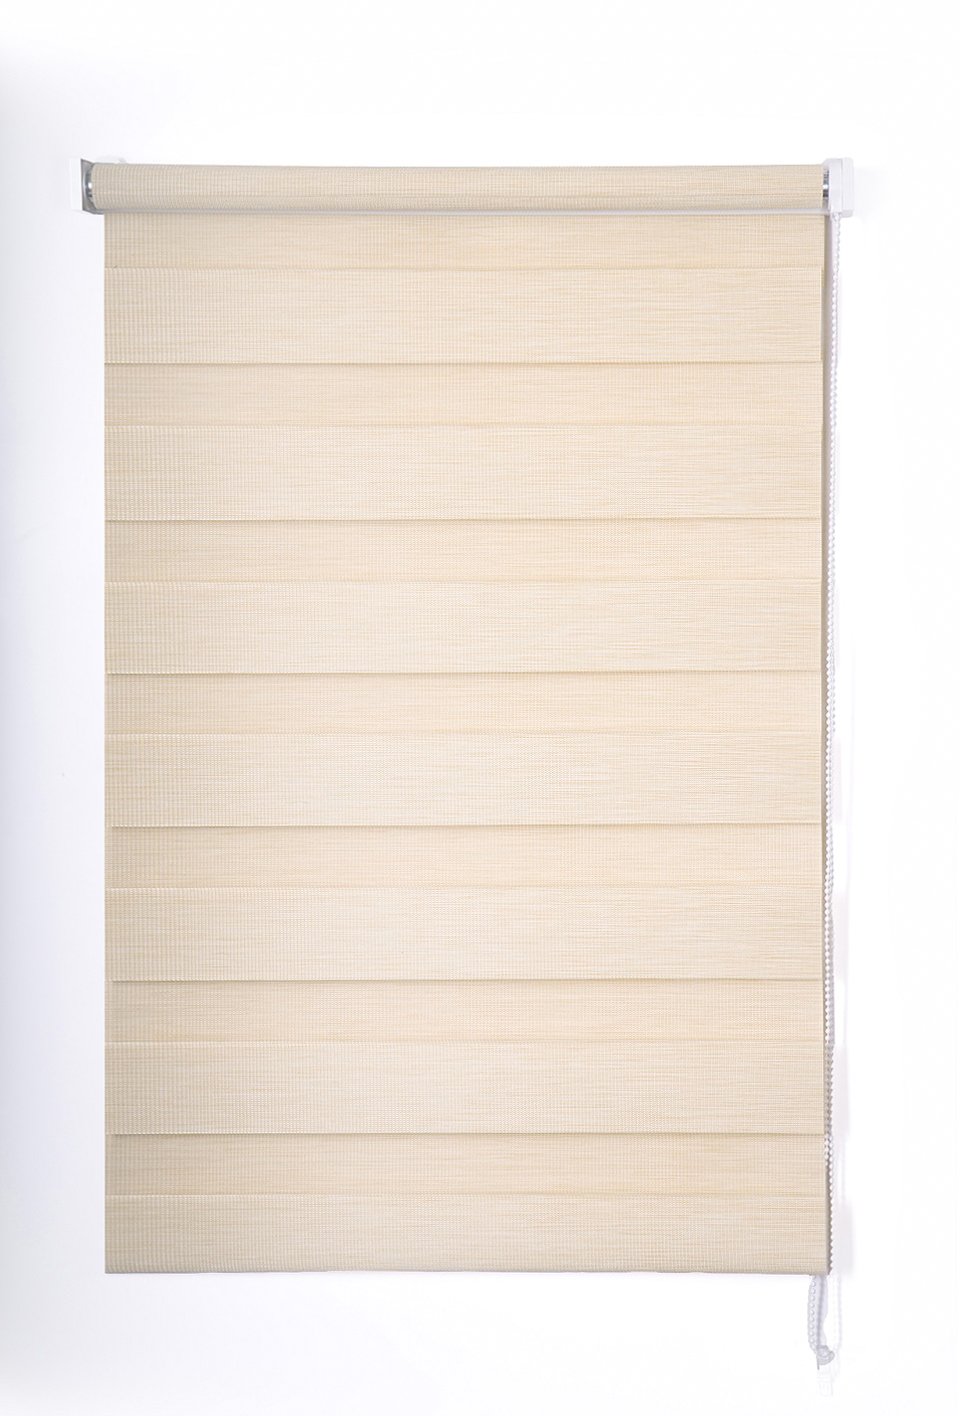 Klasikinė ritininė užuolaida VERONA D&N, smėlio sp., 120 x 170 cm, 100 % poliesteris